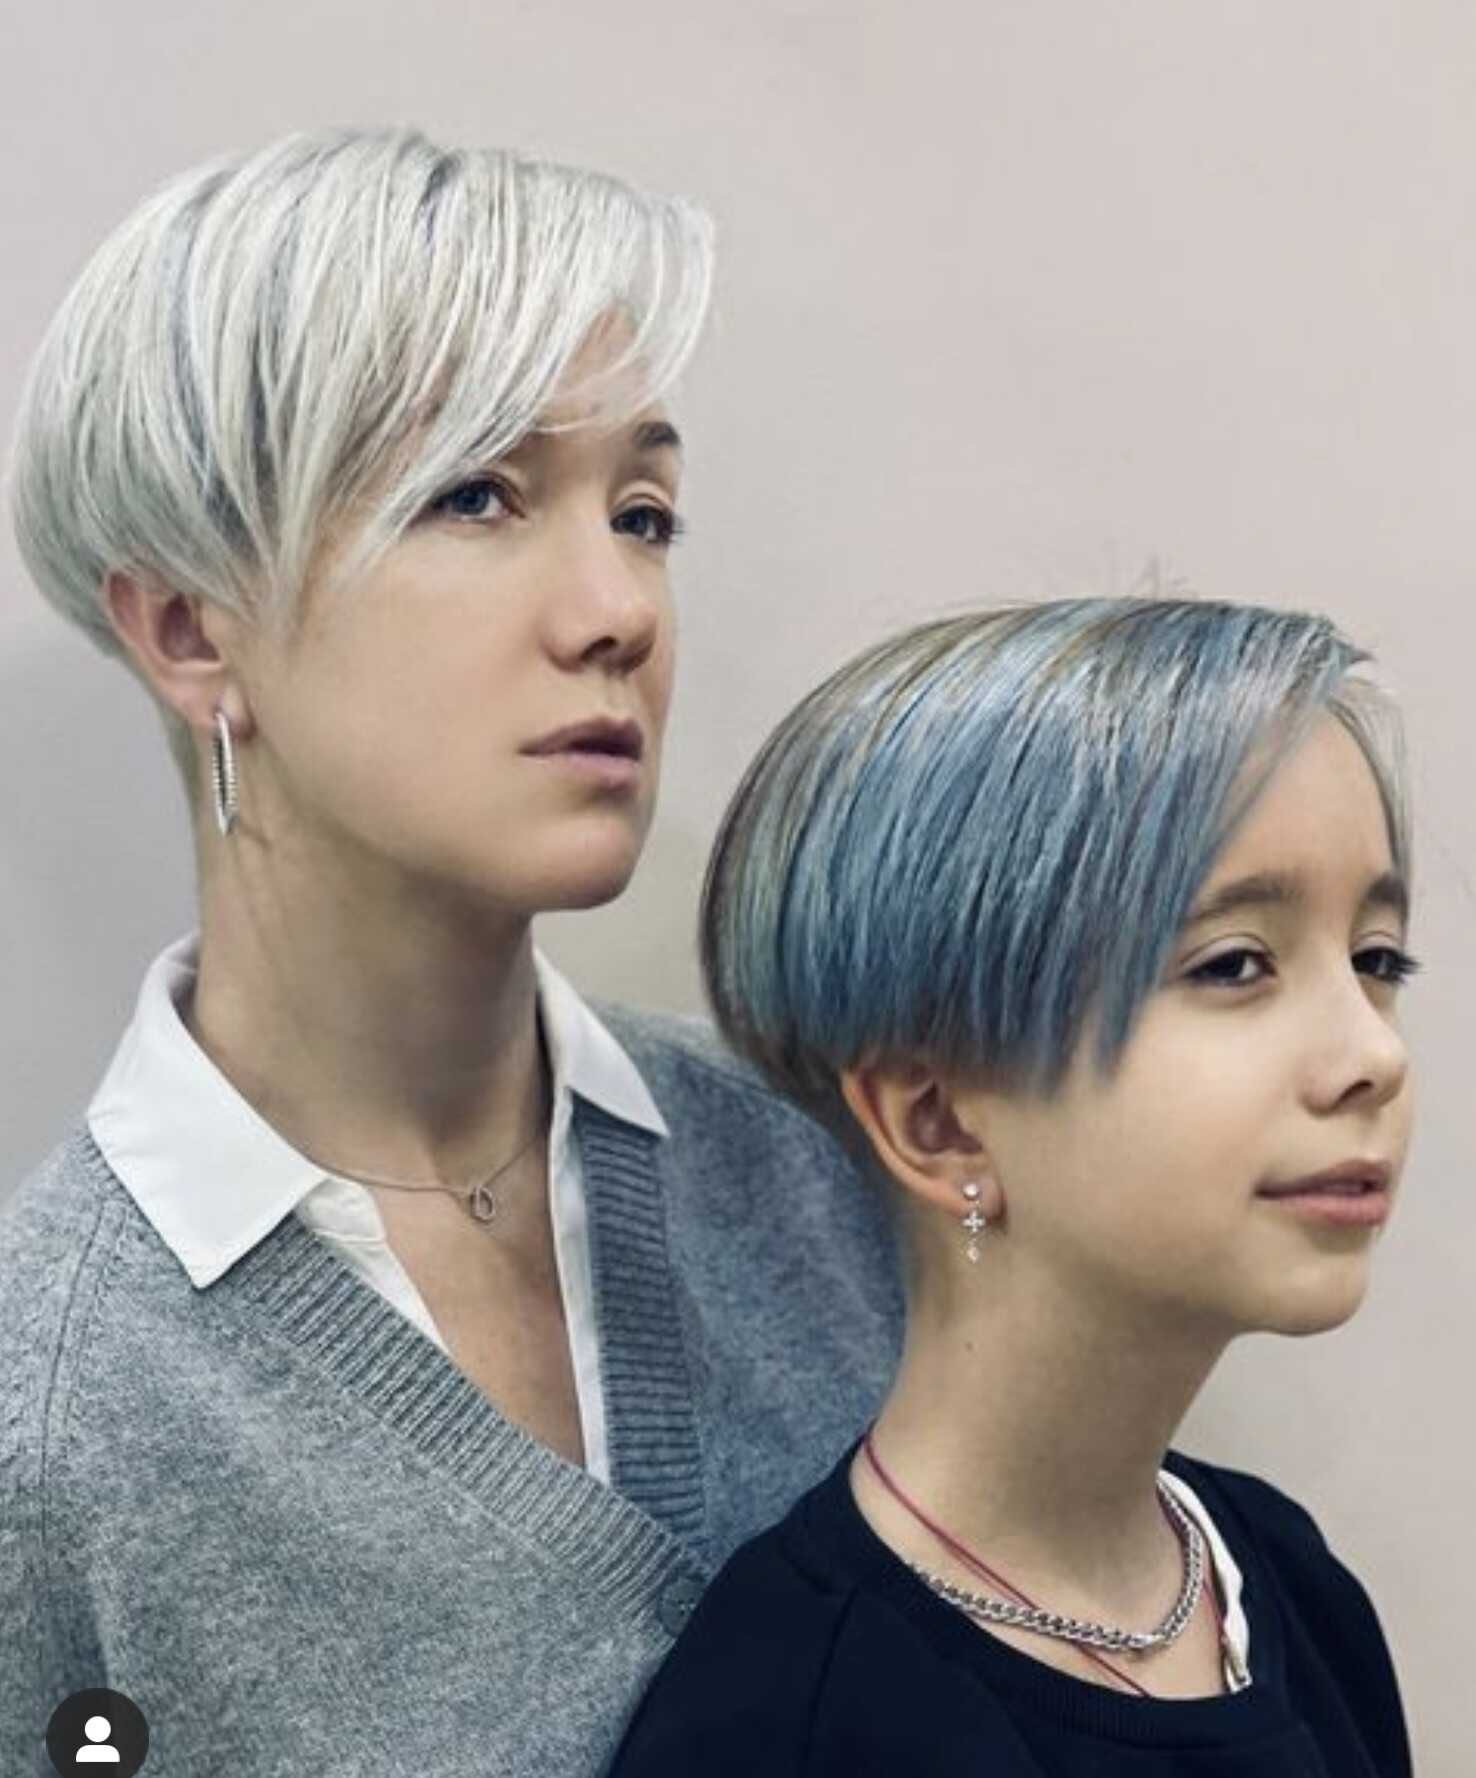 "Не рановато?": дочь Дарьи Мороз сменила цвет волос